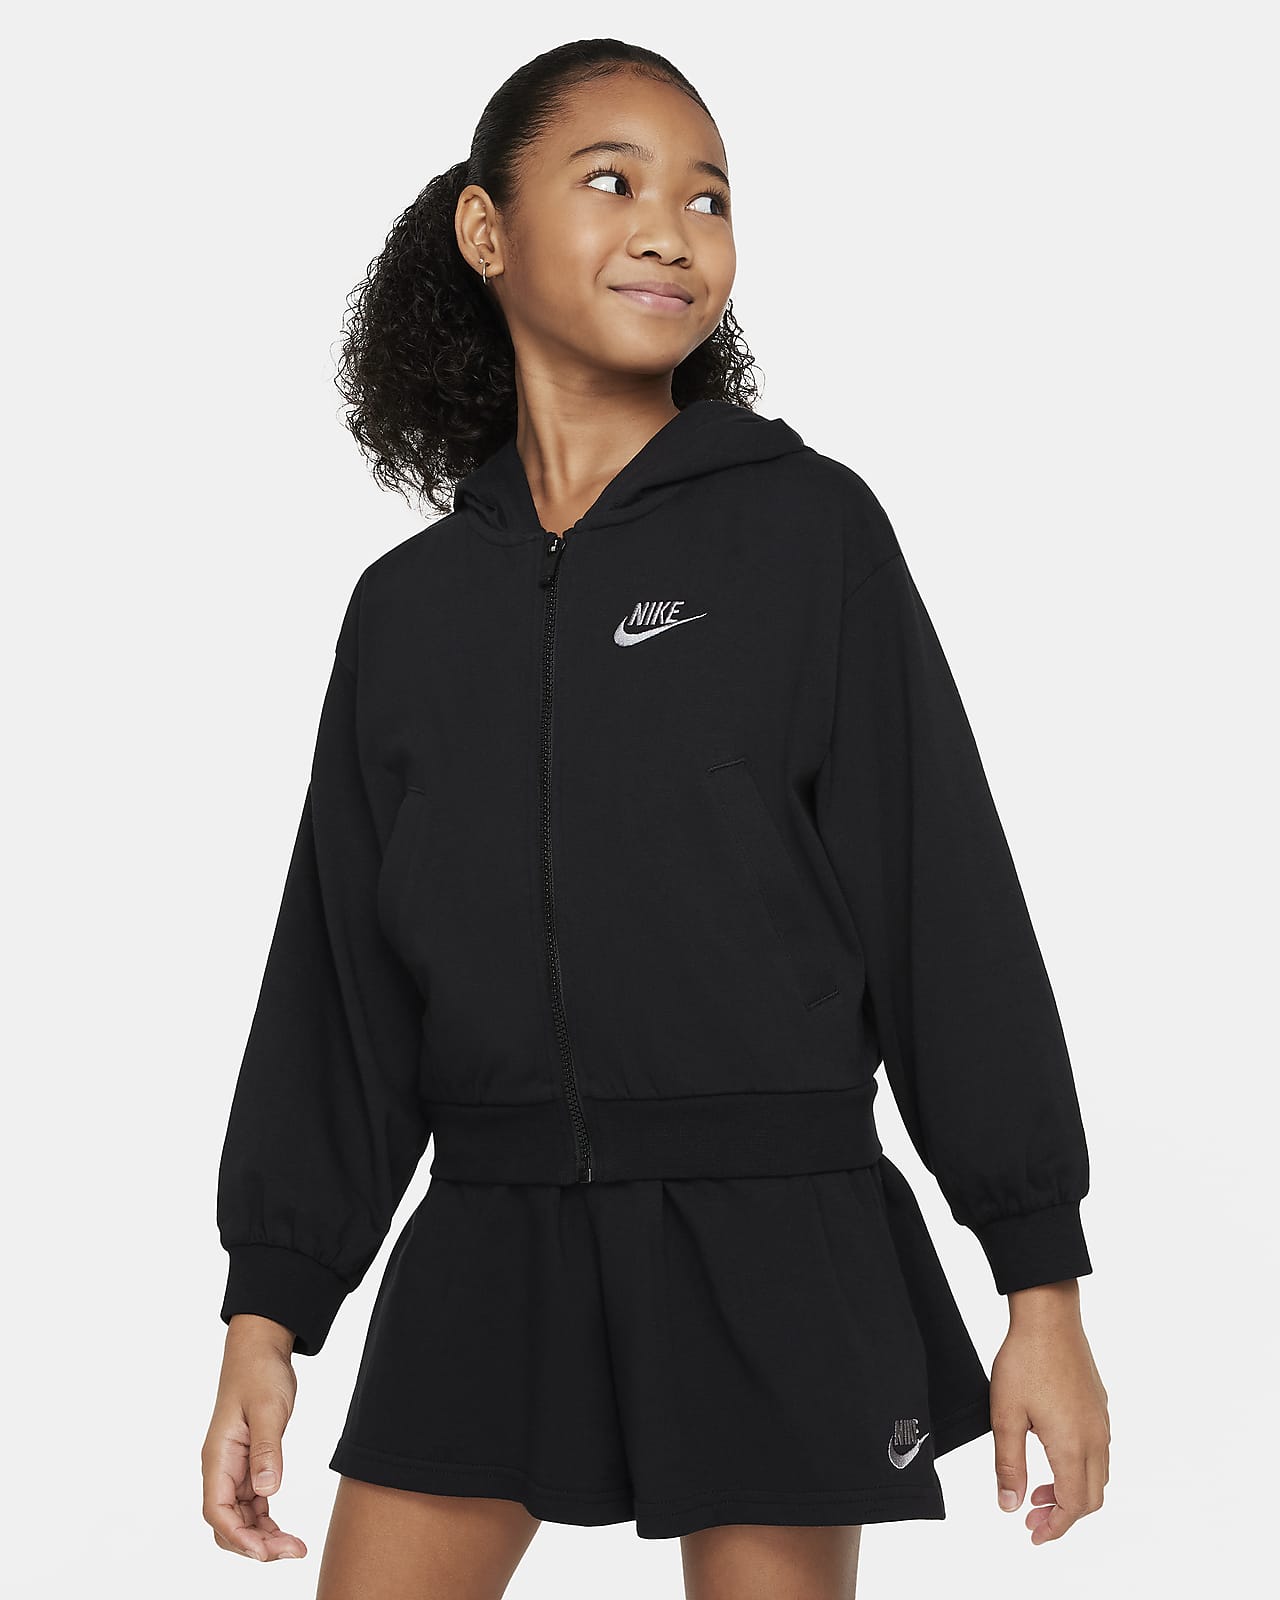 Huvtröja med hel dragkedja Nike Sportswear för tjejer